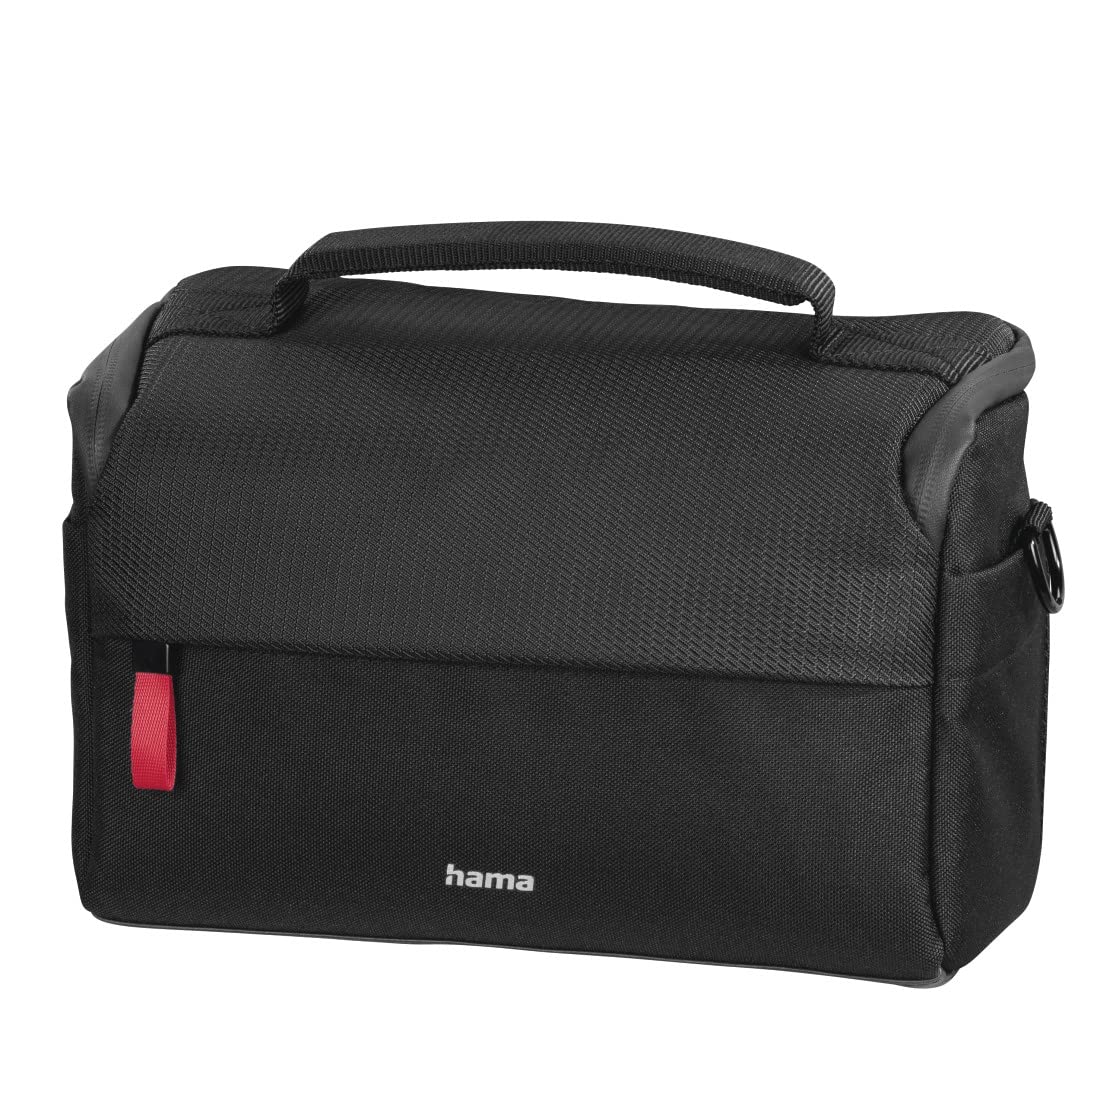 Hama Kameratasche "Matera" 130 (kompakte Fototasche, Kameratasche für Spiegelreflexkamera und Zubehör, Umhängetasche mit Schultergurt, Trolleyband und Zubehörfächern, recyceltes PET) schwarz